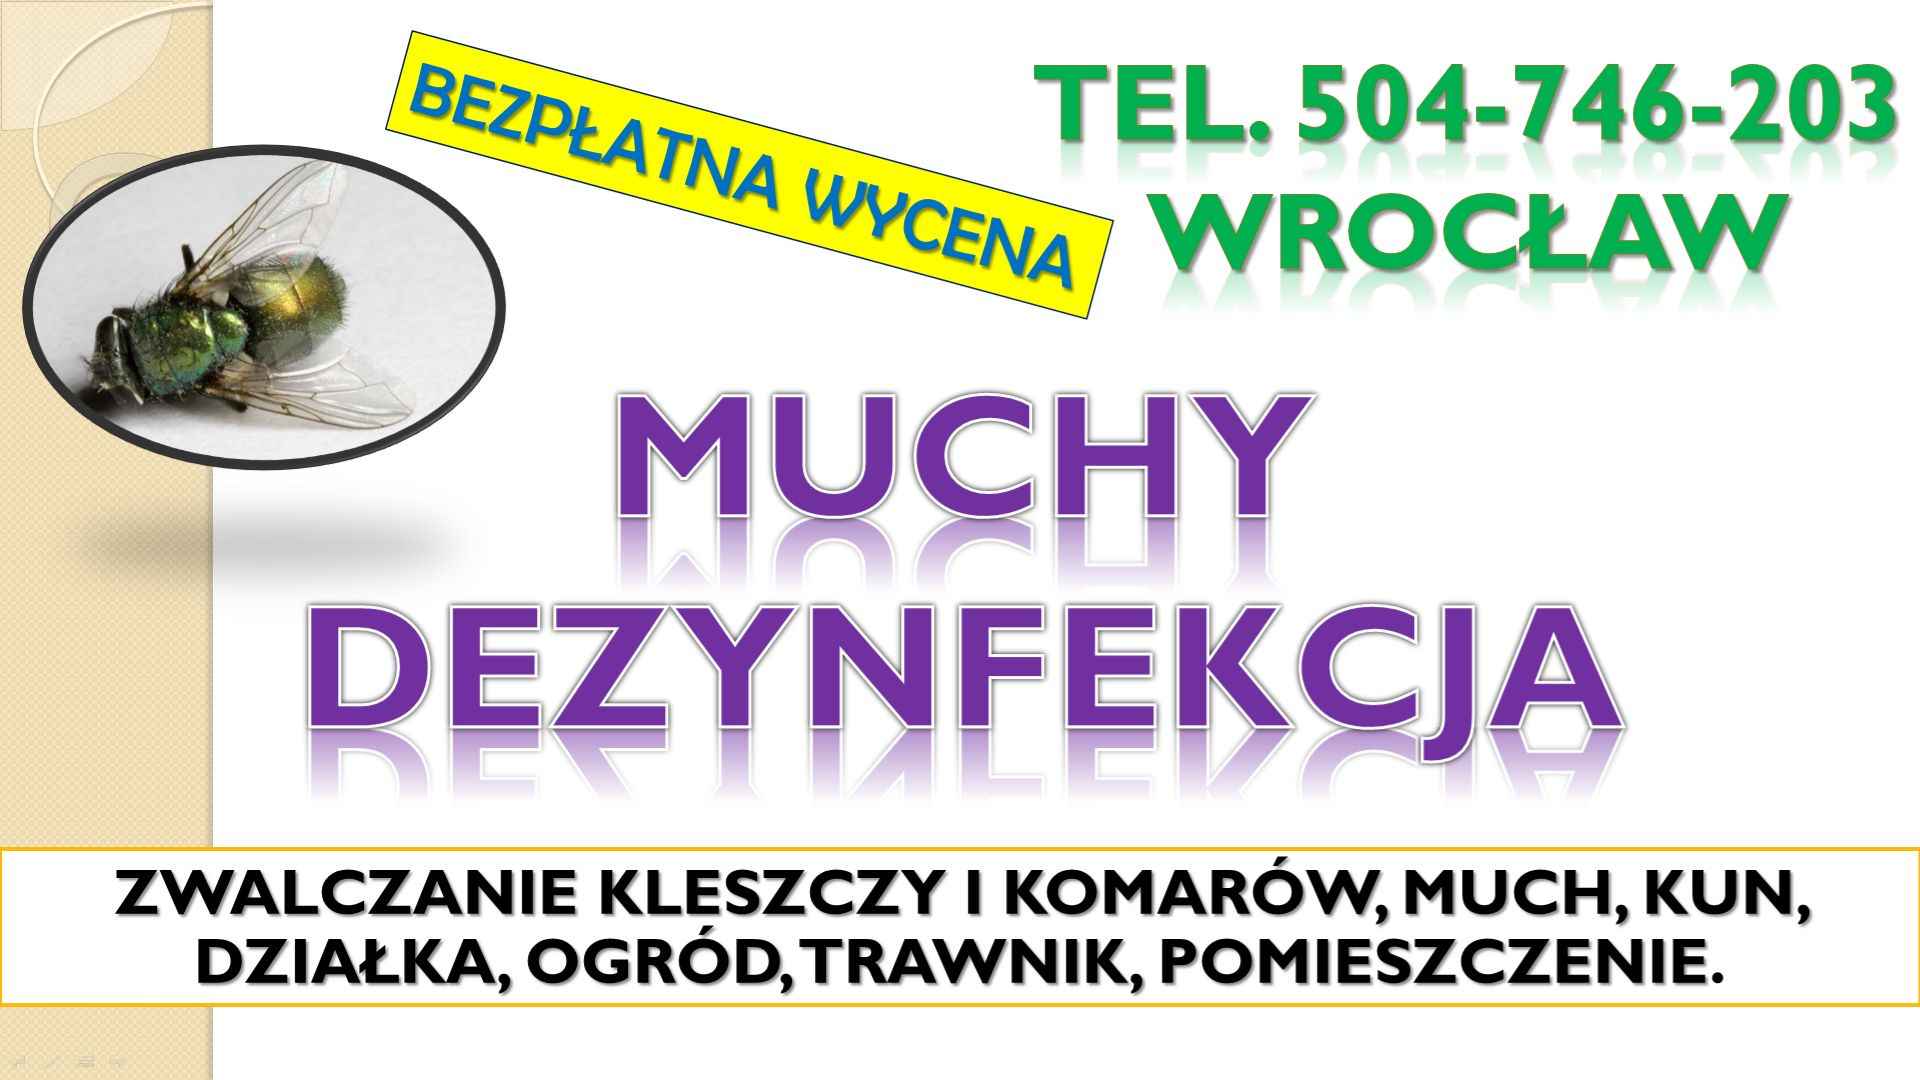 Likwidacja much dezynfekcja, t. 504-746-203, Wrocław. Zwalczanie muchy Psie Pole - zdjęcie 4